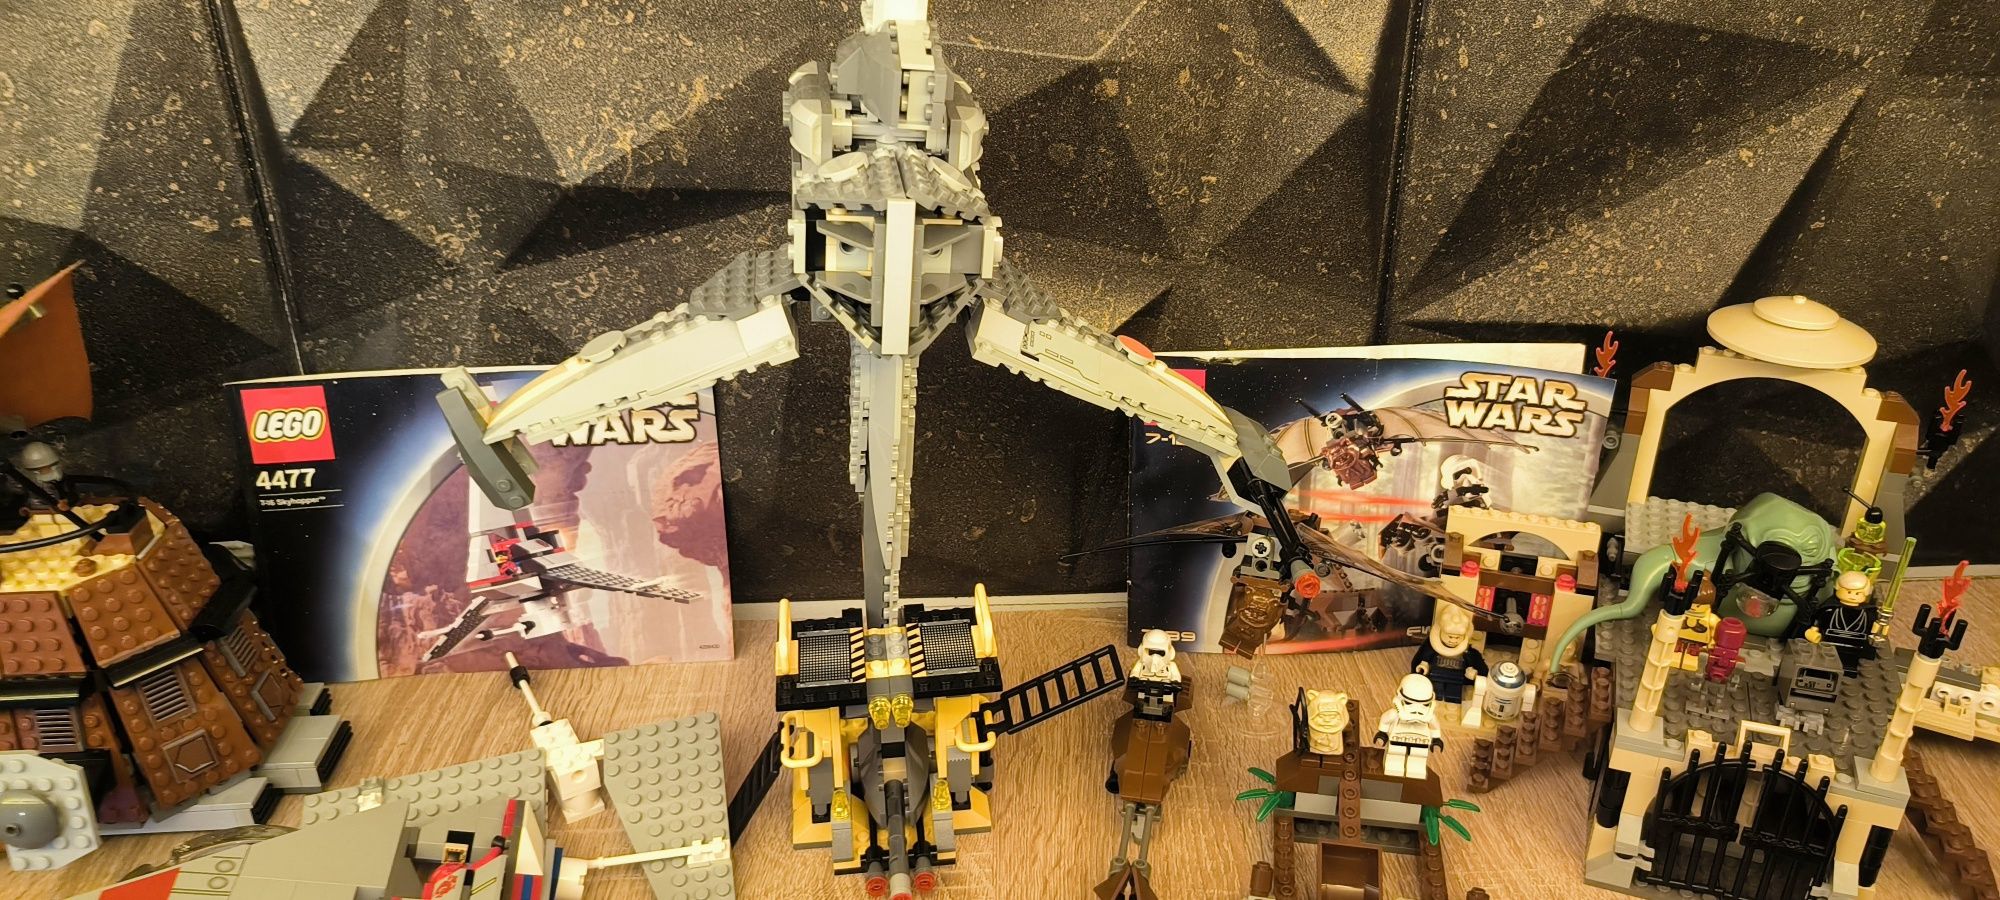 Lego 6208 Star Wars